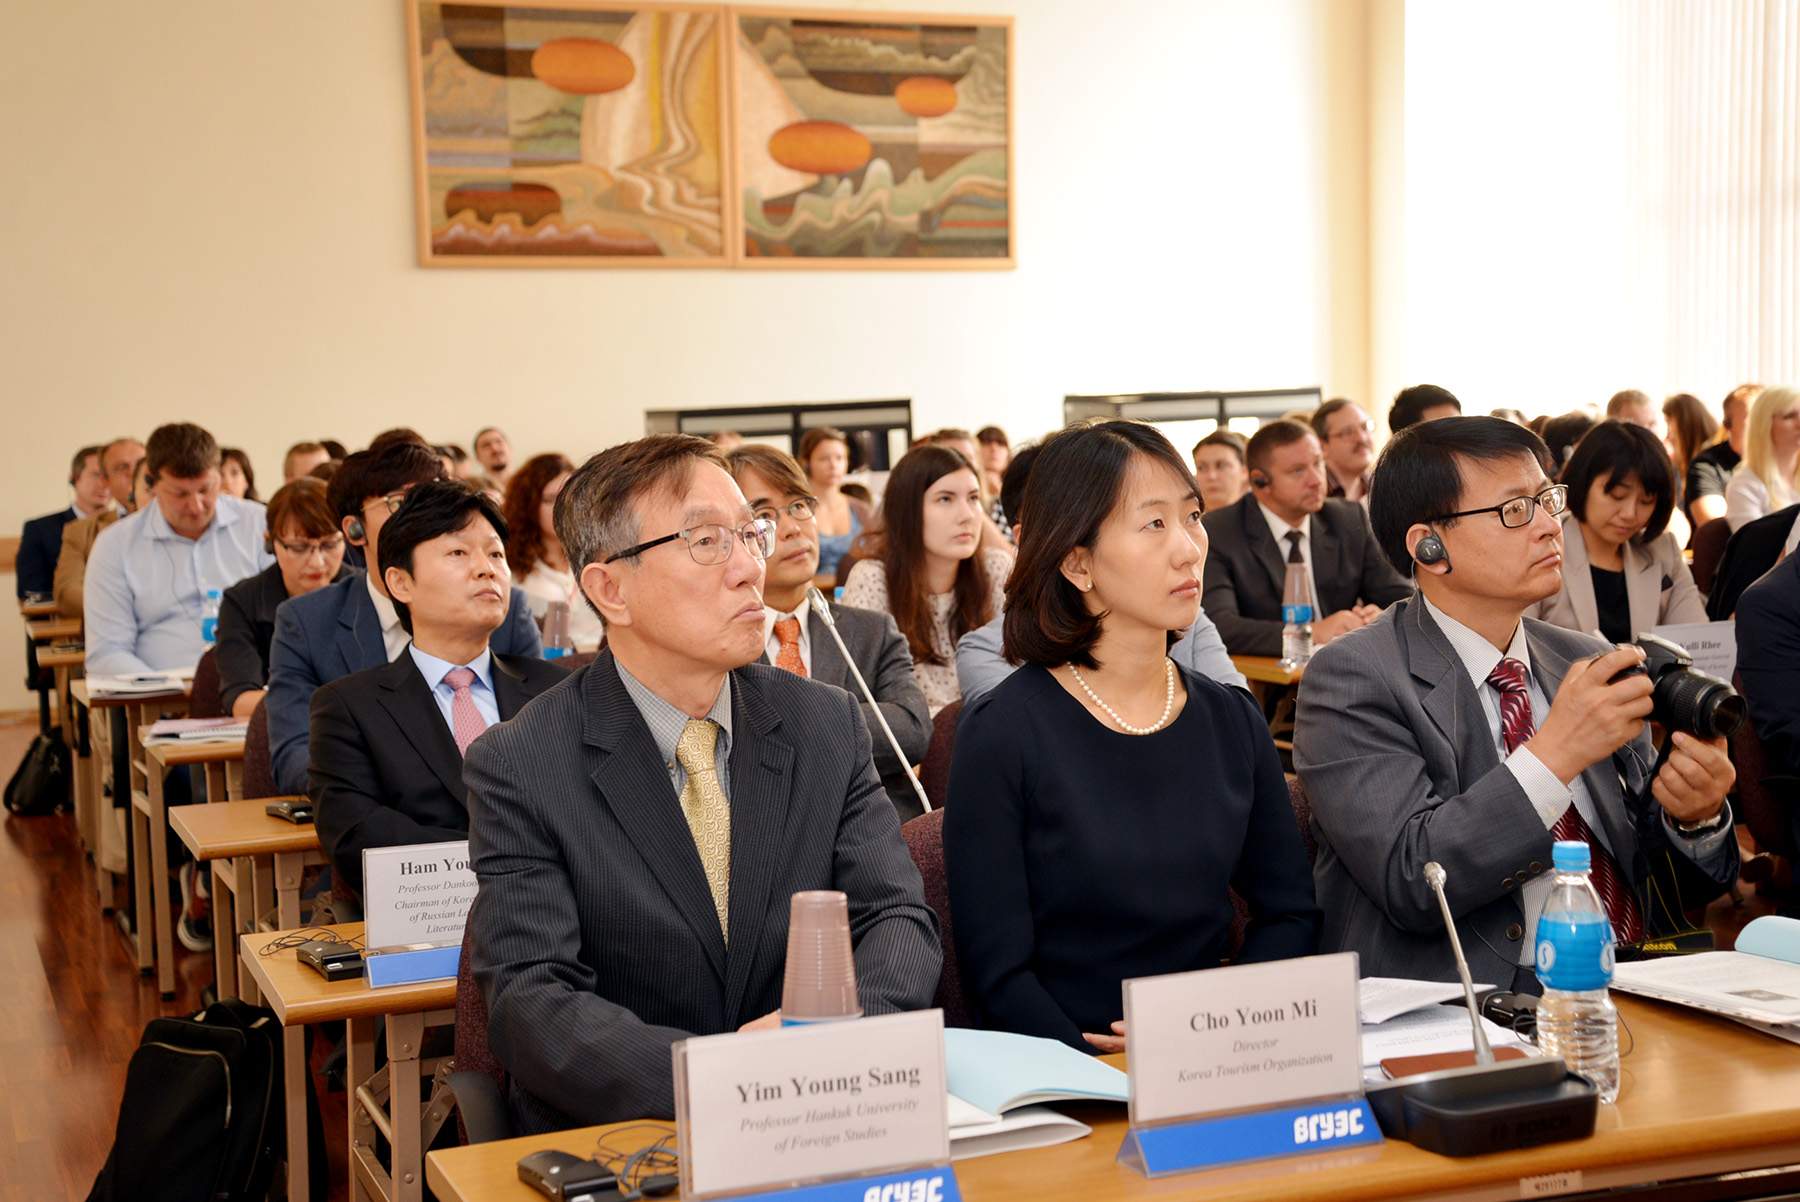 Во ВГУЭС прошел III Российско-корейский Дальневосточный форум знаний